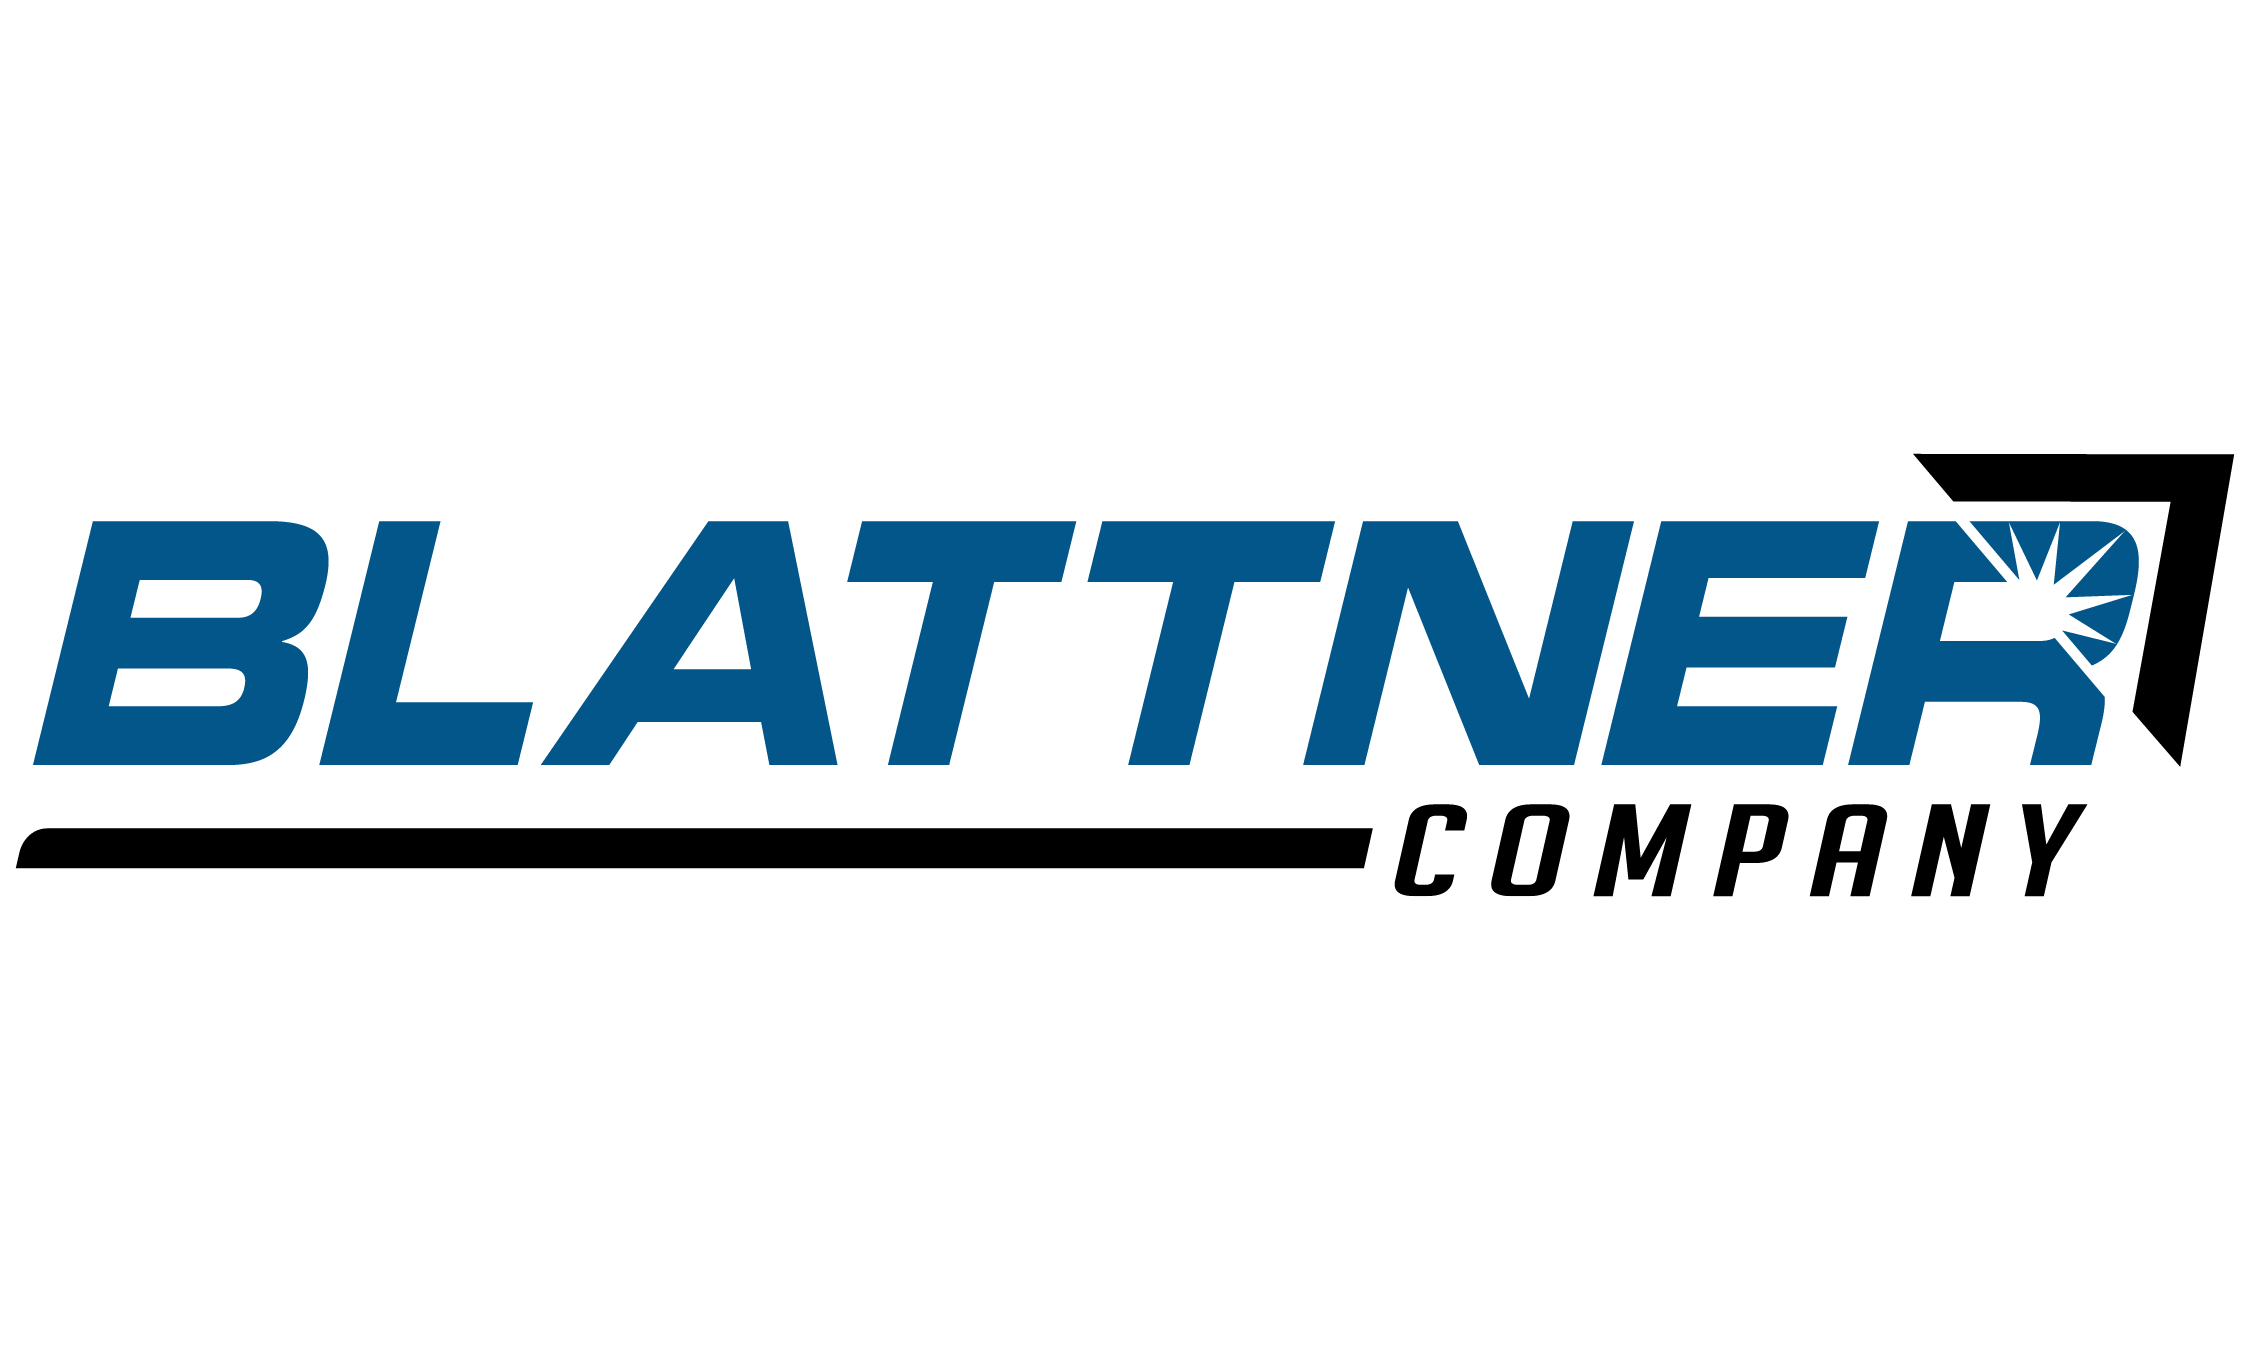 Blattner Company Company Logo